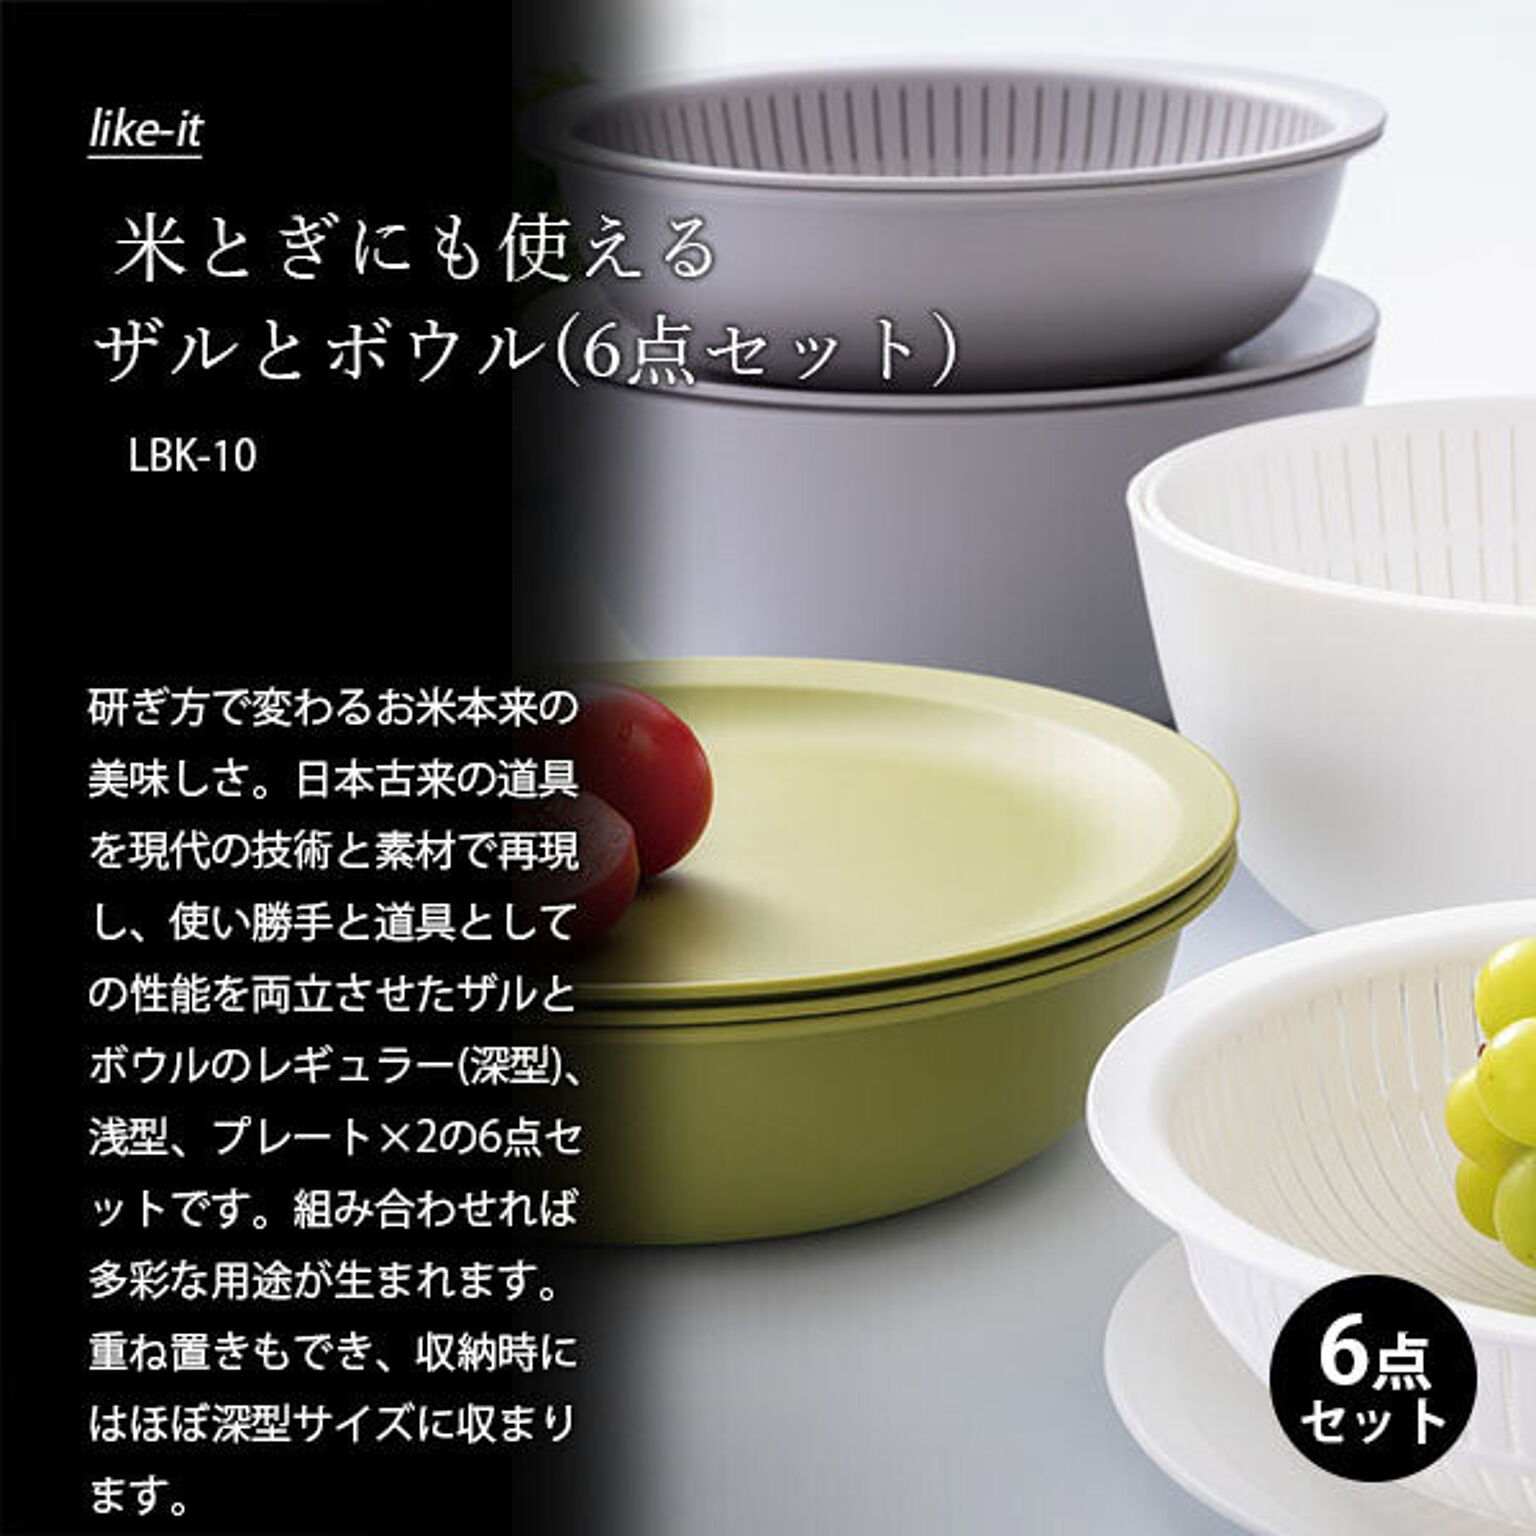 法人値引有 柳宗理 セラミックプレート ホワイト4点 日本製 食器